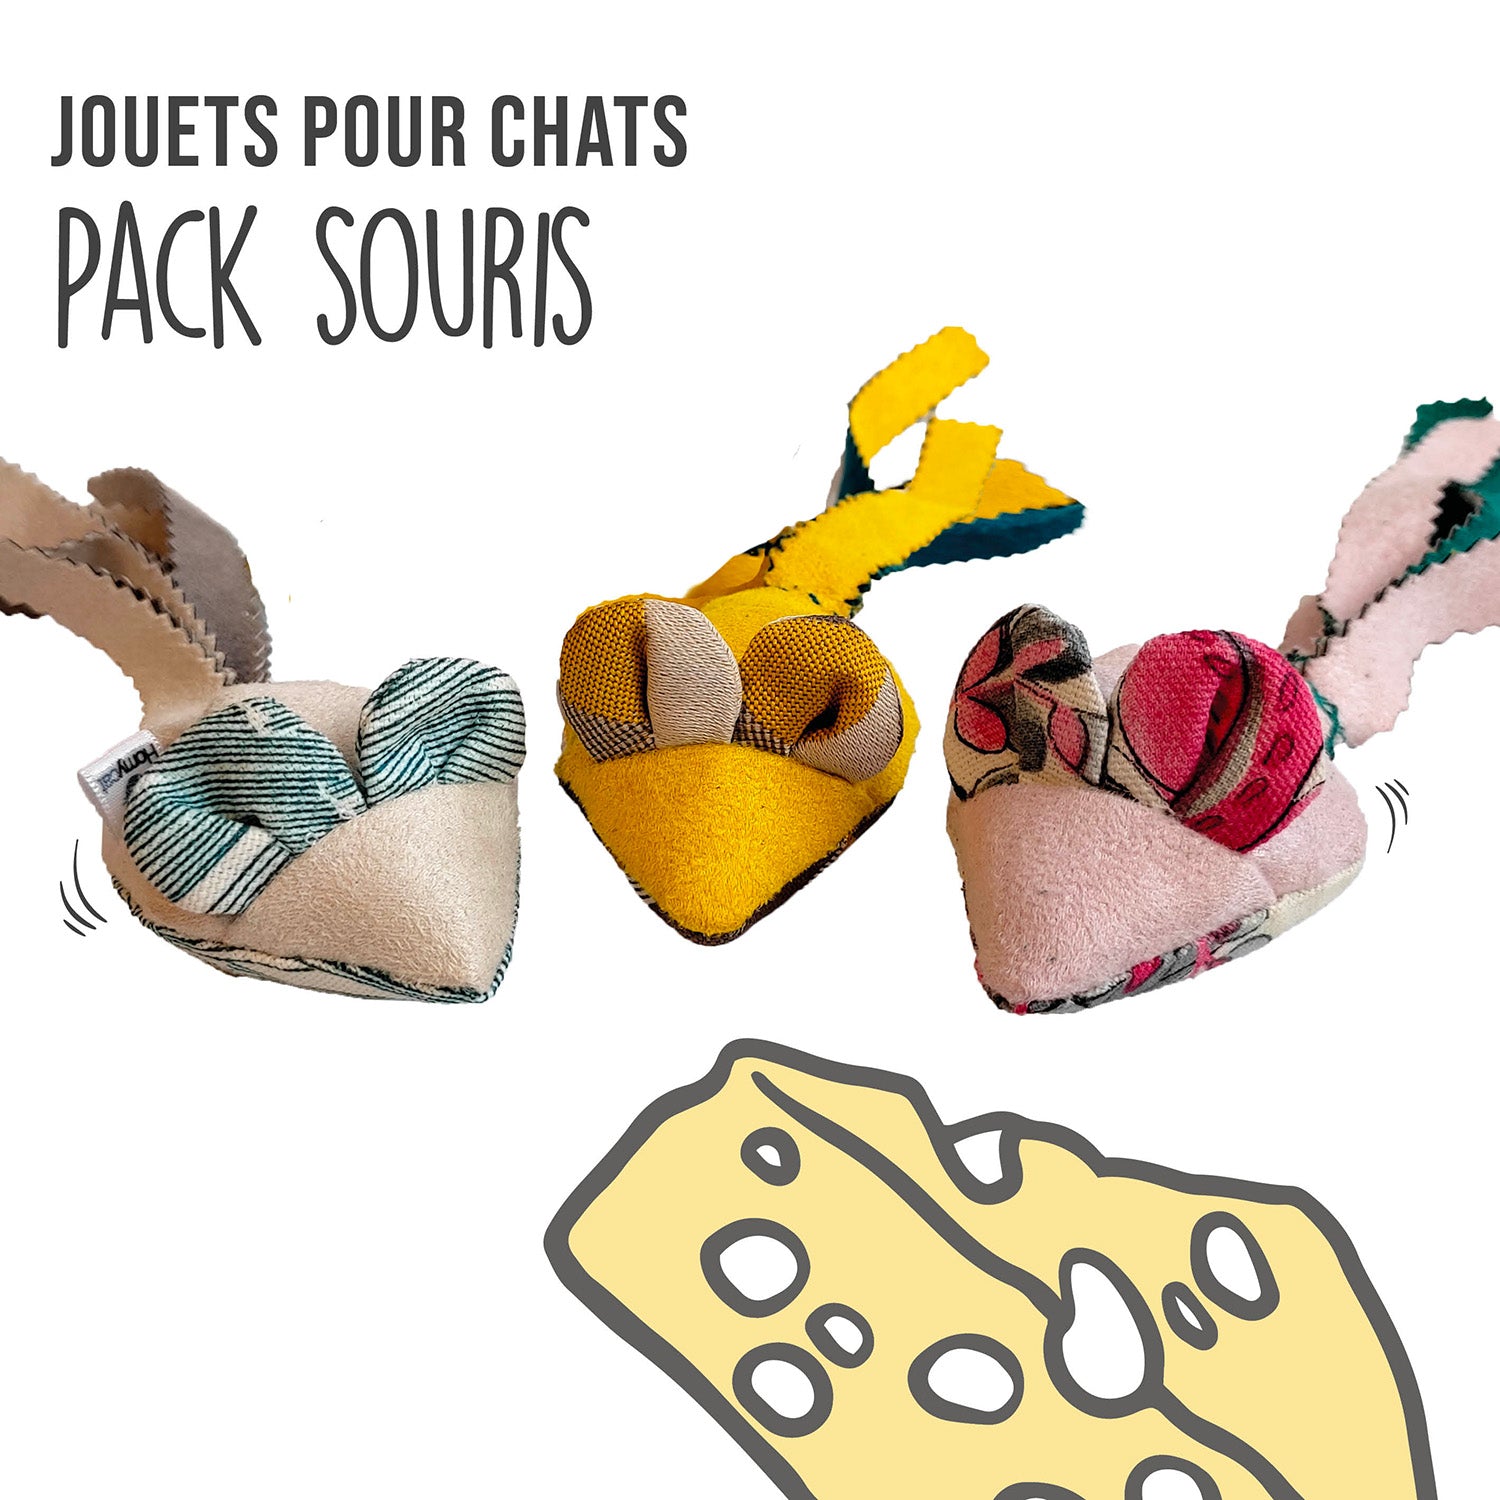 Pack Souris- 3 x Jouets Souris pour chats